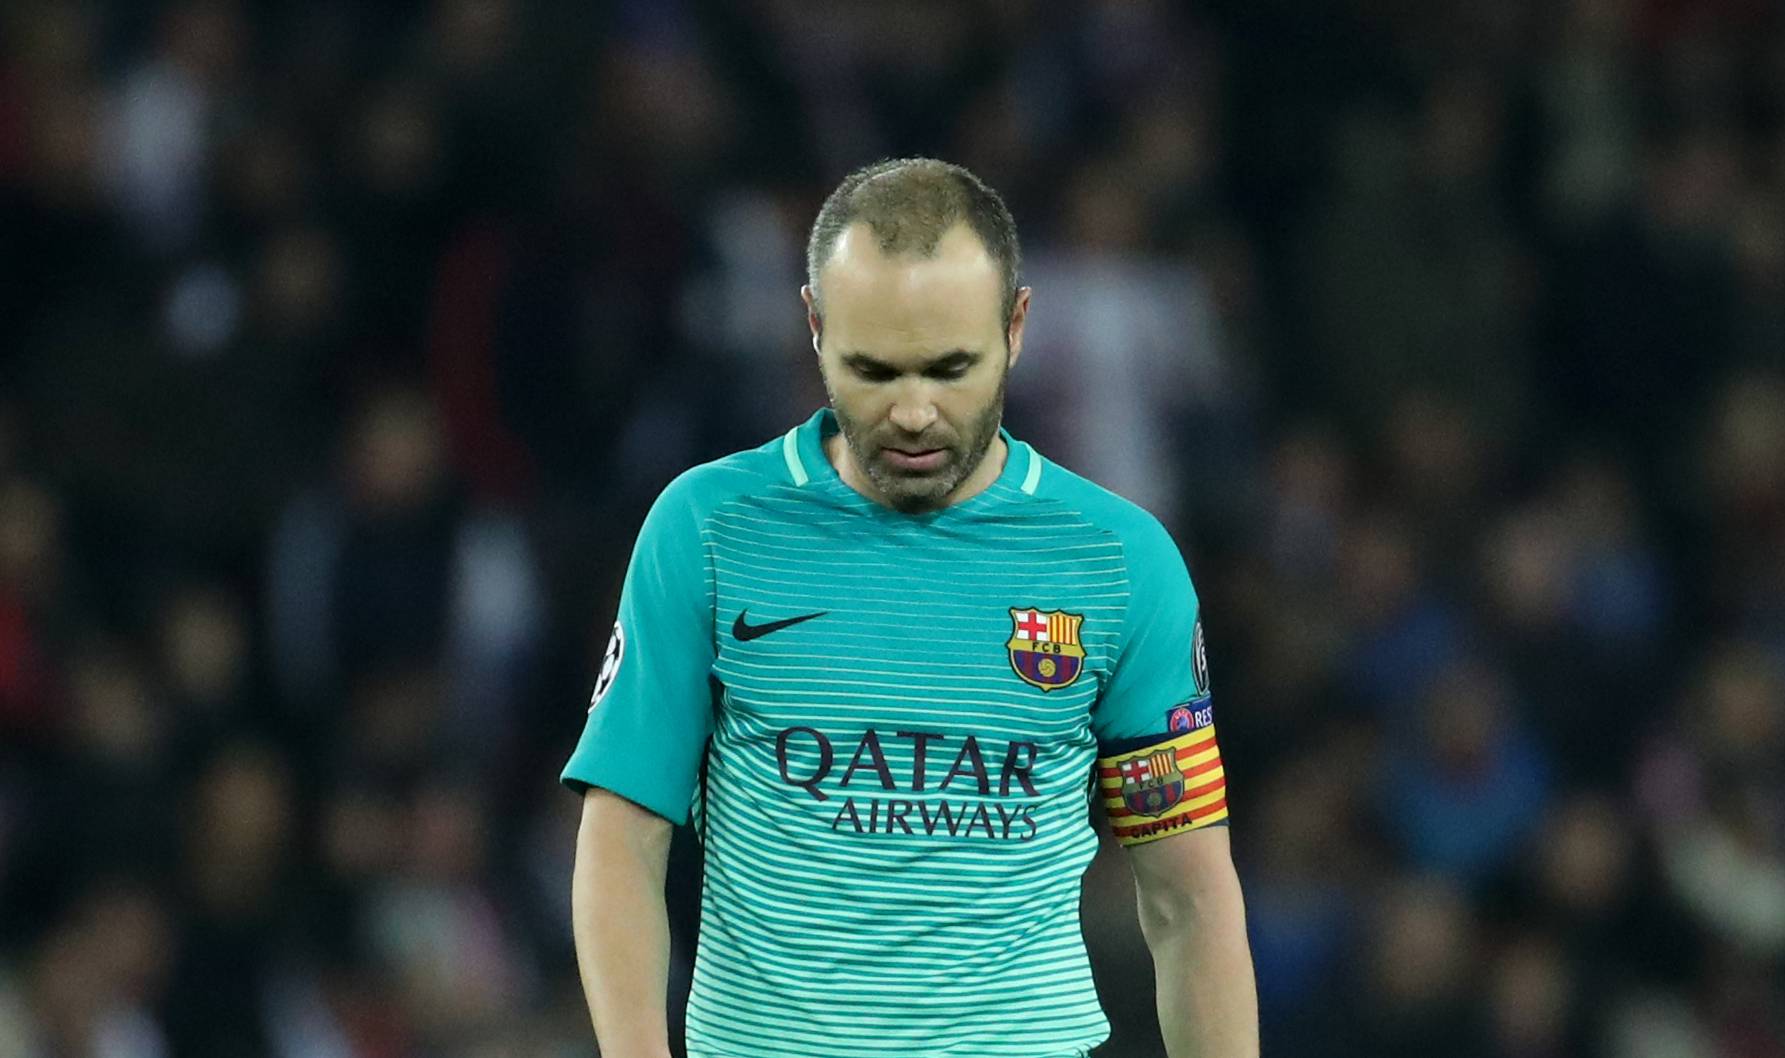 Barcelona's Andres Iniesta looks dejected